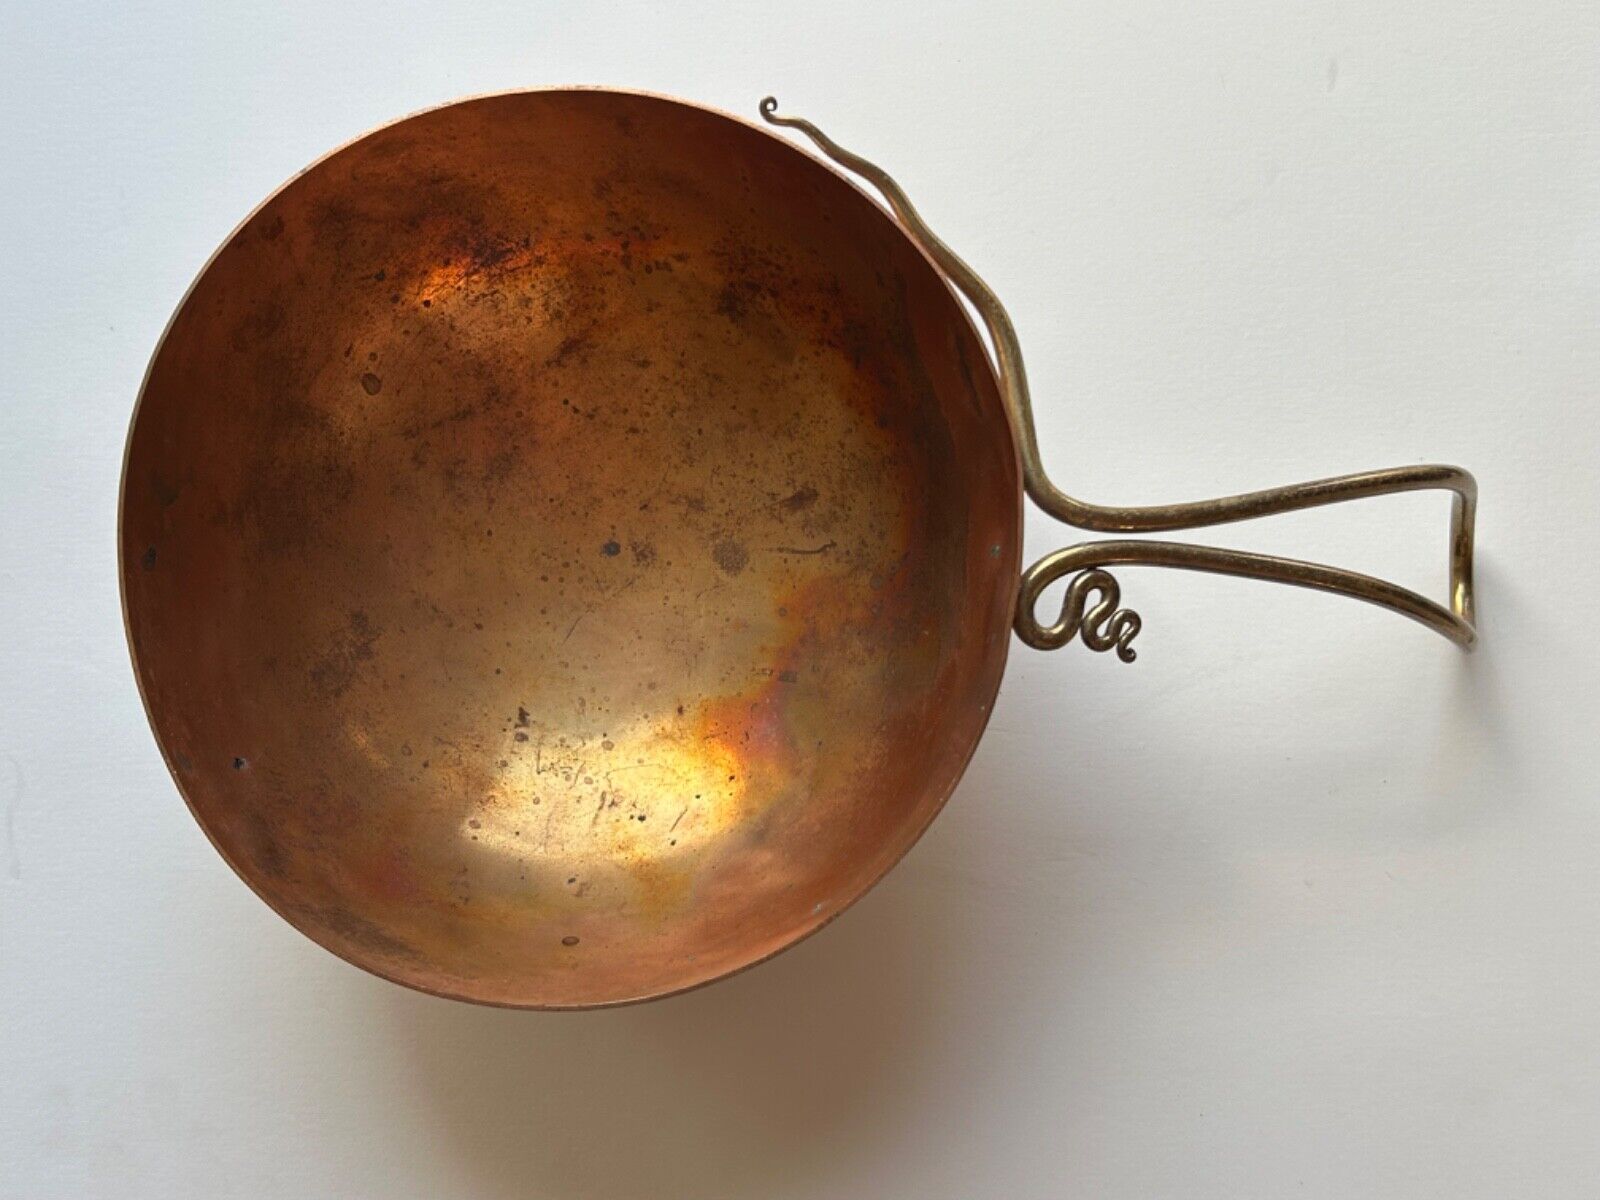 Joe Spoon Copper & Brass Pot 1996 Hand Wrought Handmade 9” Pot Bowl